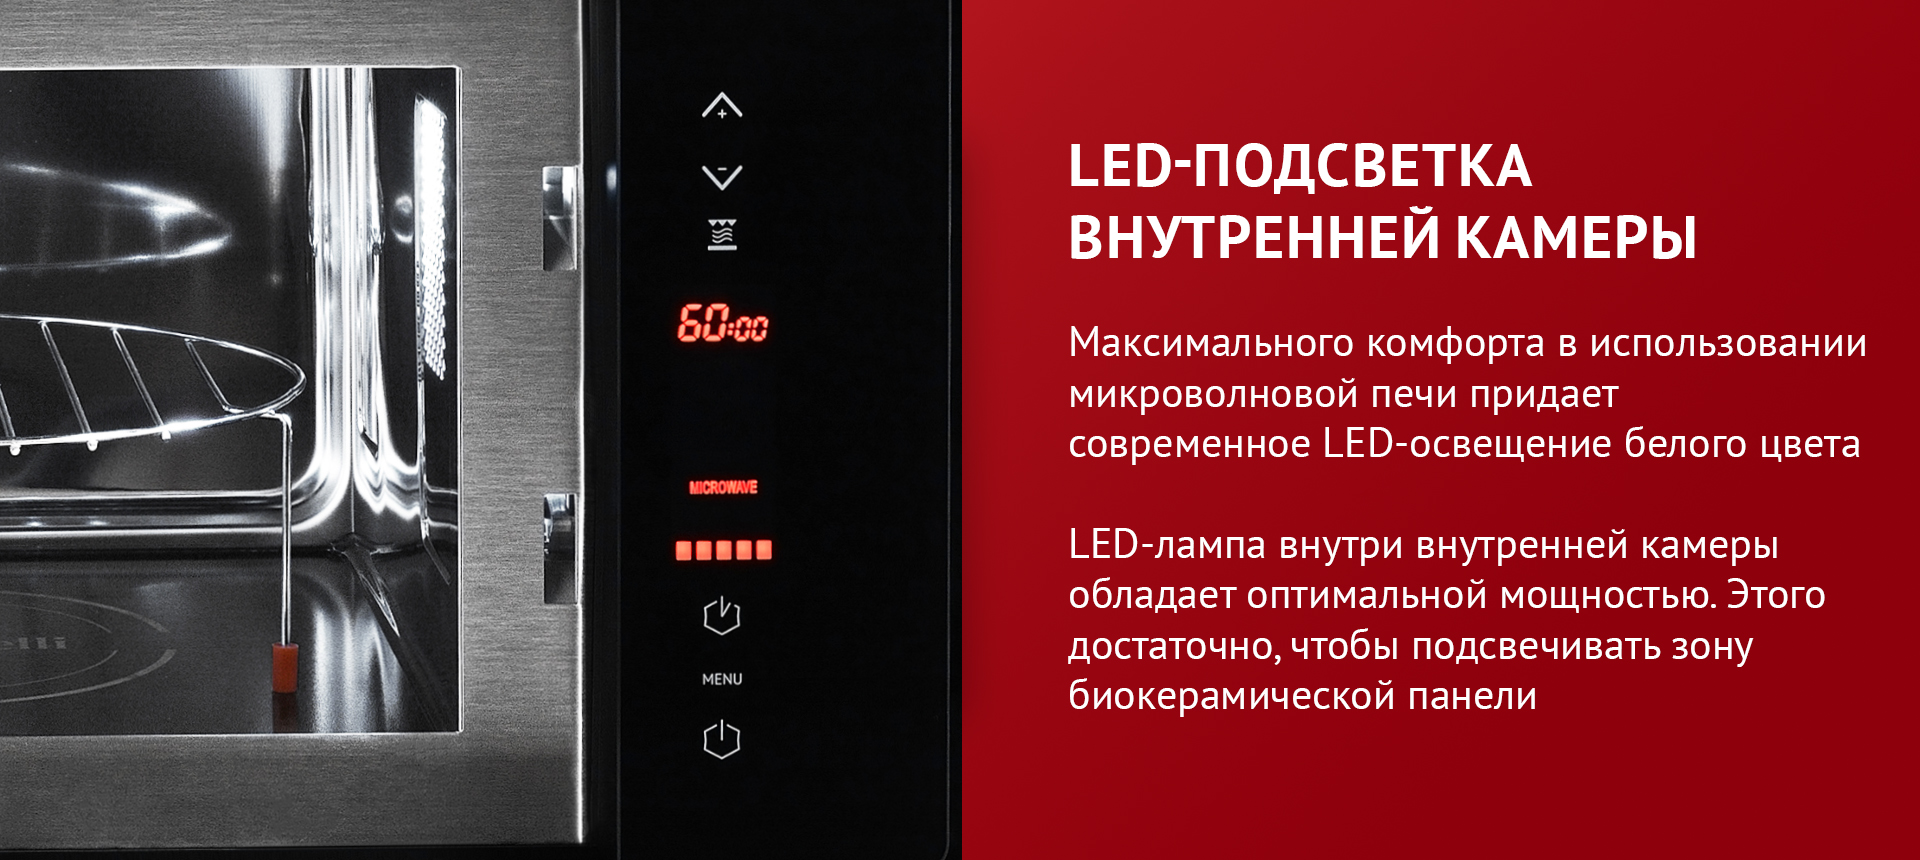 Максимального комфорта в использовании микроволновой печи придает LED-освещение белого цвета. LED-лампа внутри внутренней камеры обладает оптимальной мощностью. Этого достаточно, чтобы подсвечивать зону биокерамической панели